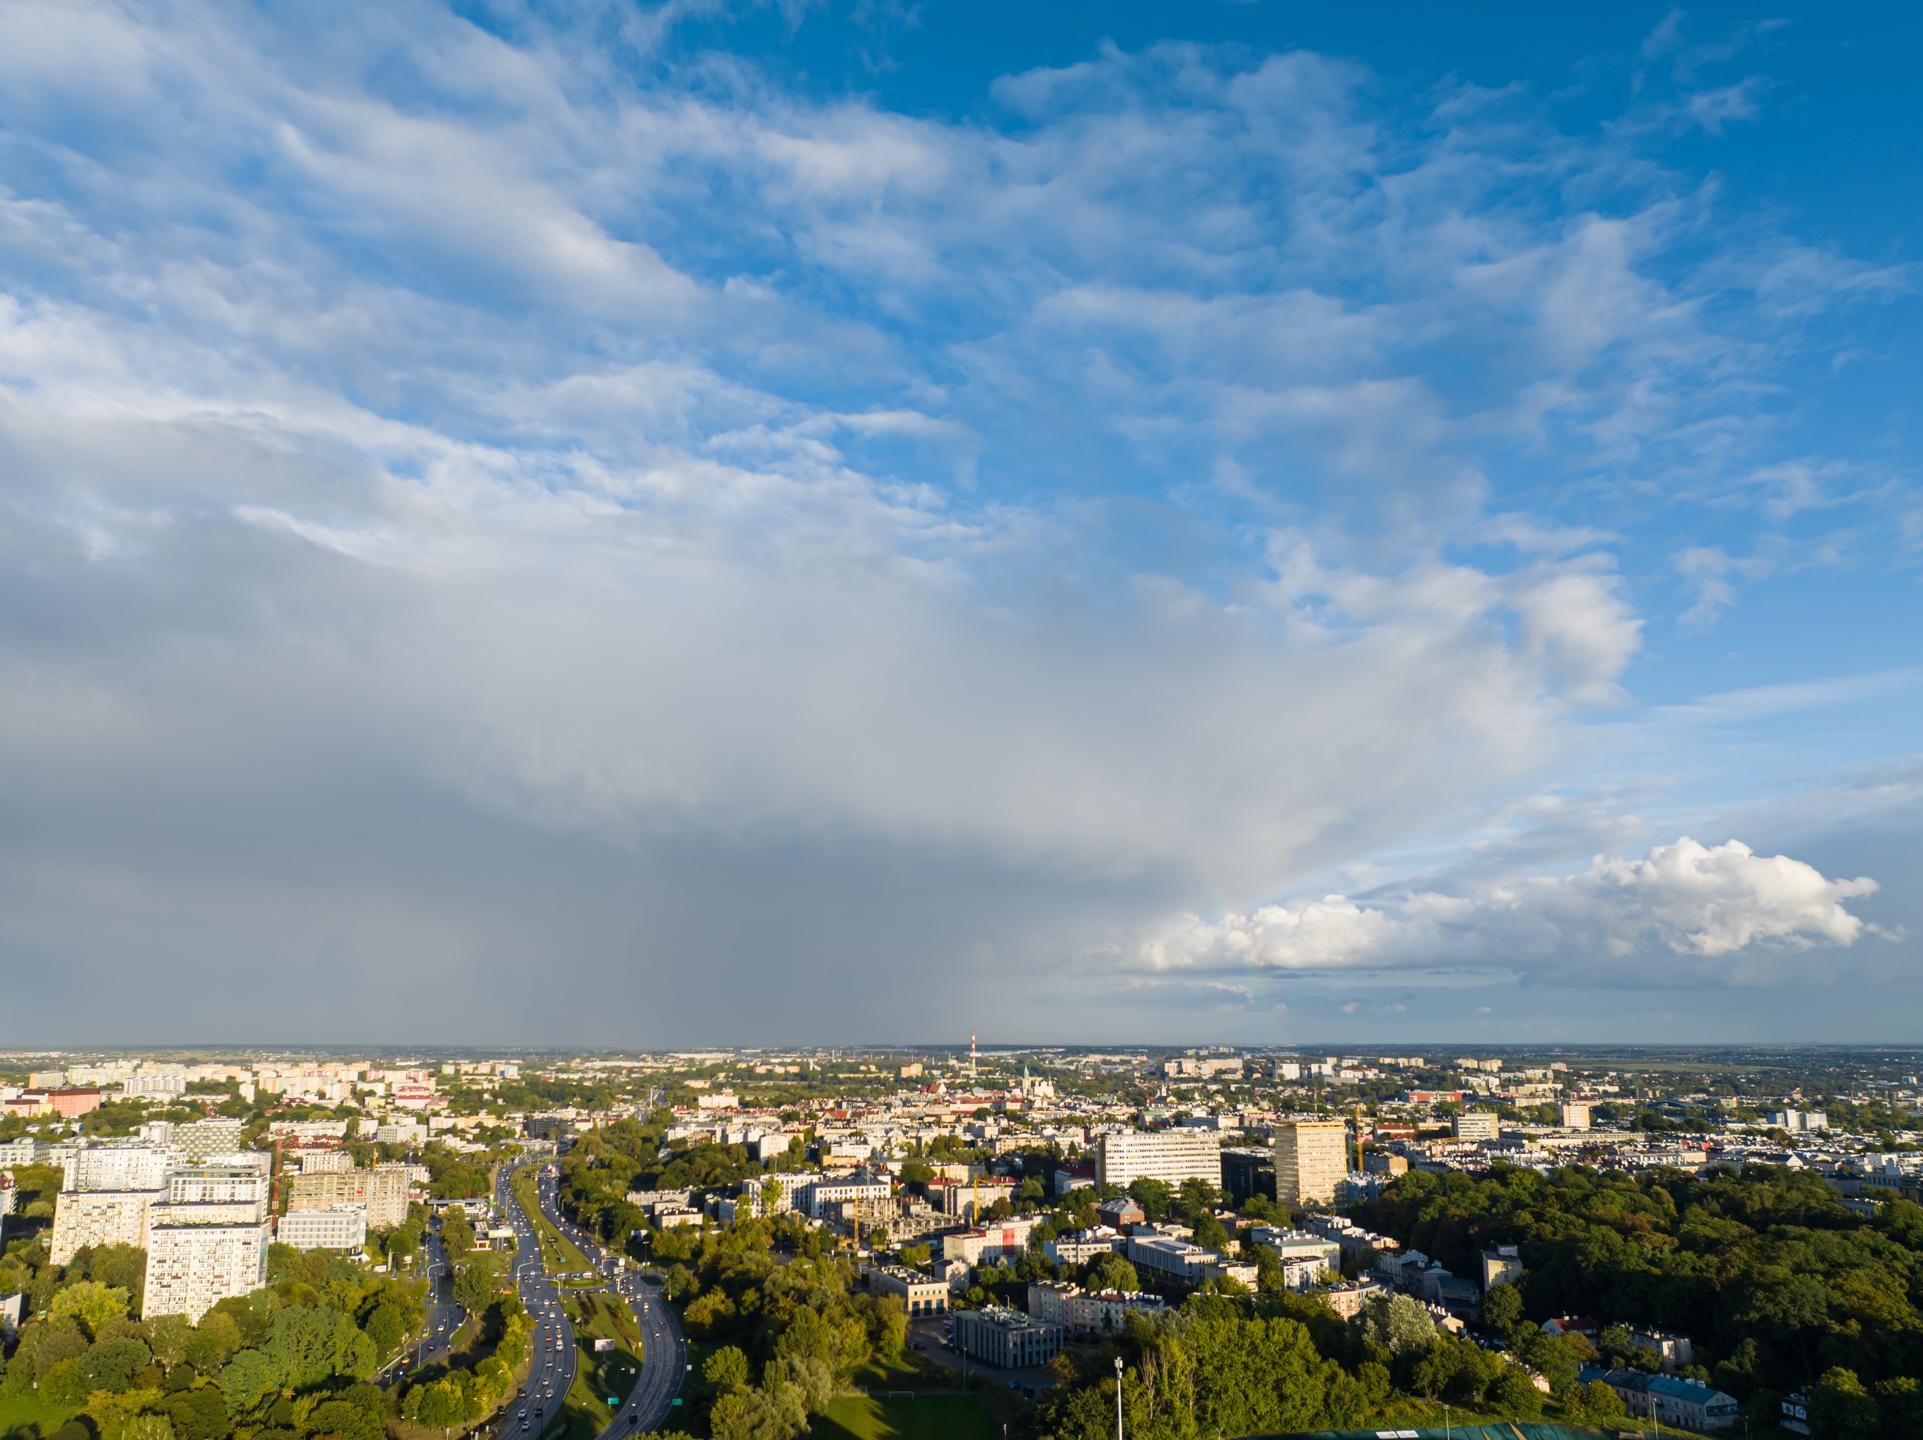 Piątkowa podwójna tęcza nad Lublinem widziana z drona (zdjęcia)